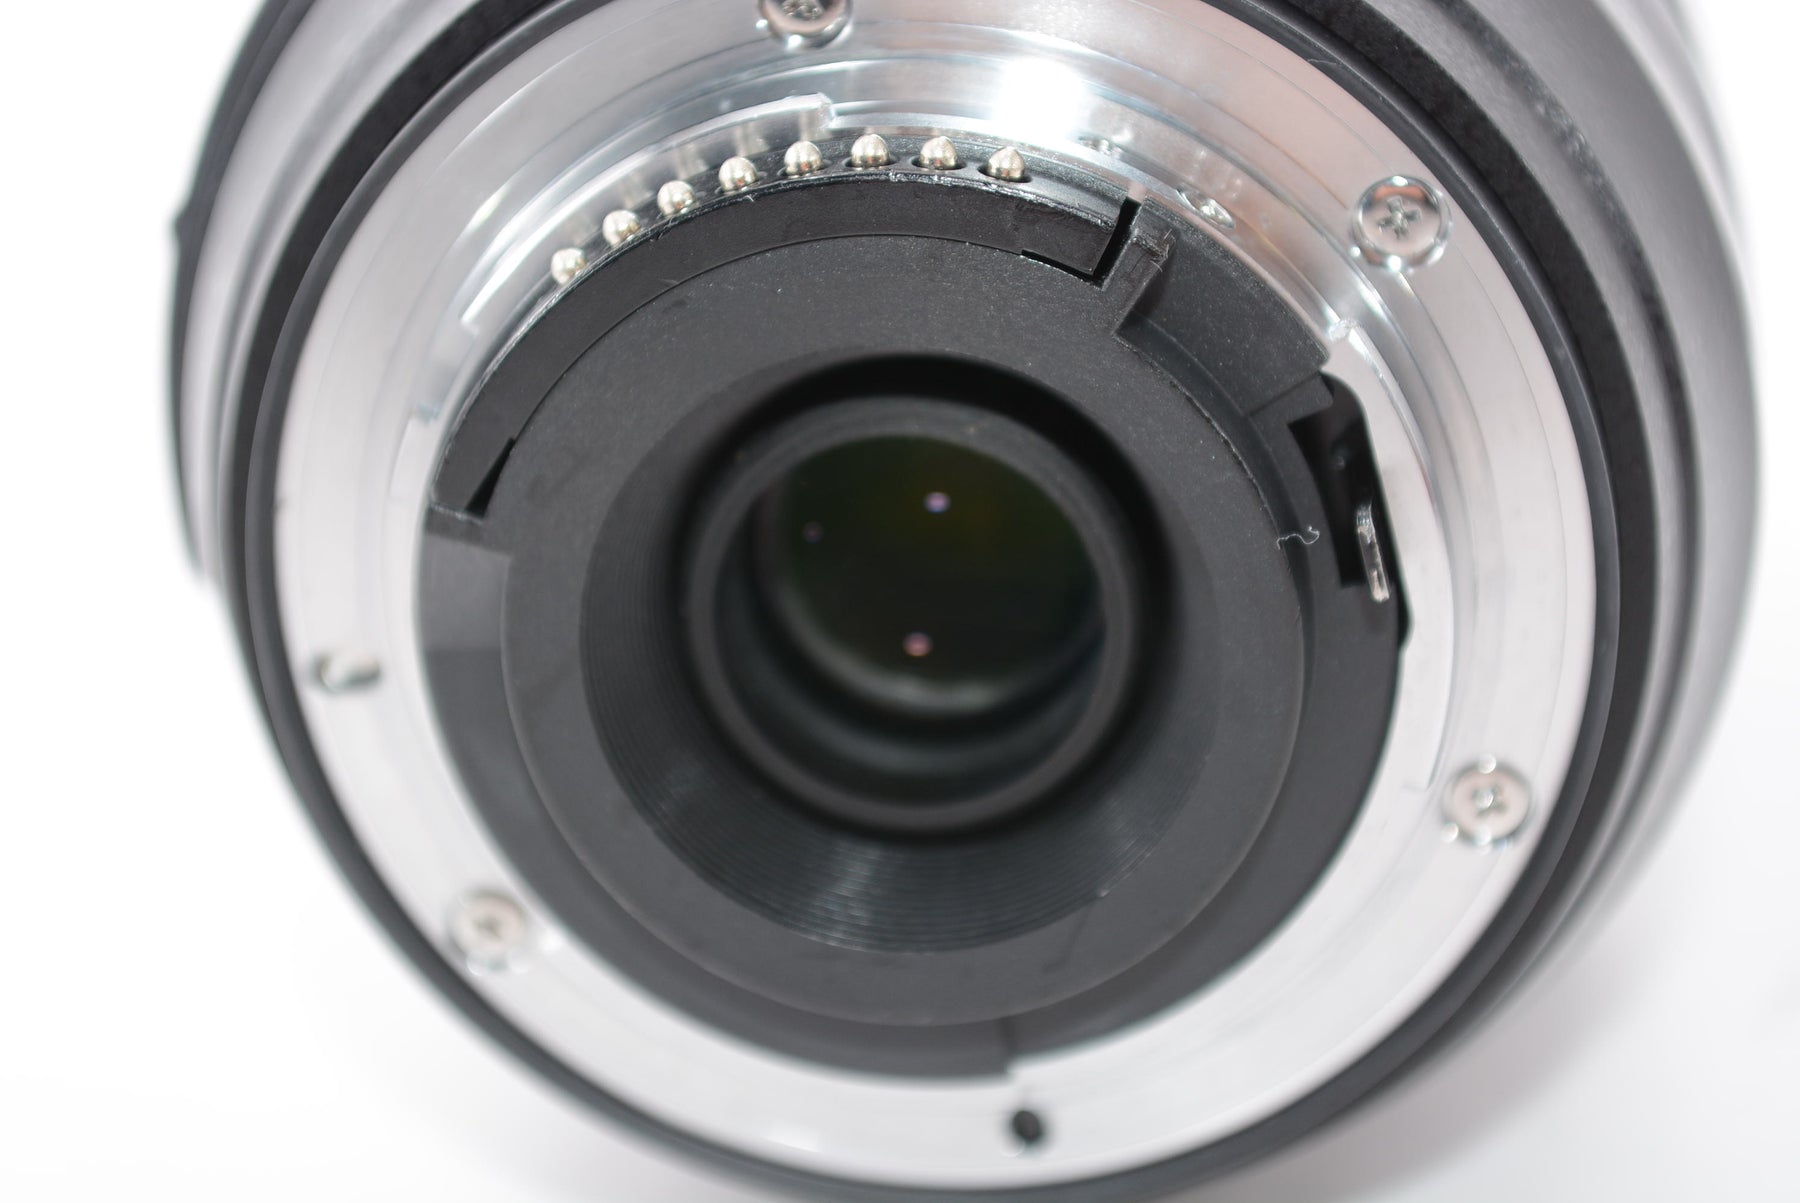 【外観特上級】Nikon 望遠ズームレンズ AF-S DX NIKKOR 55-300mm f/4.5-5.6G ED VR